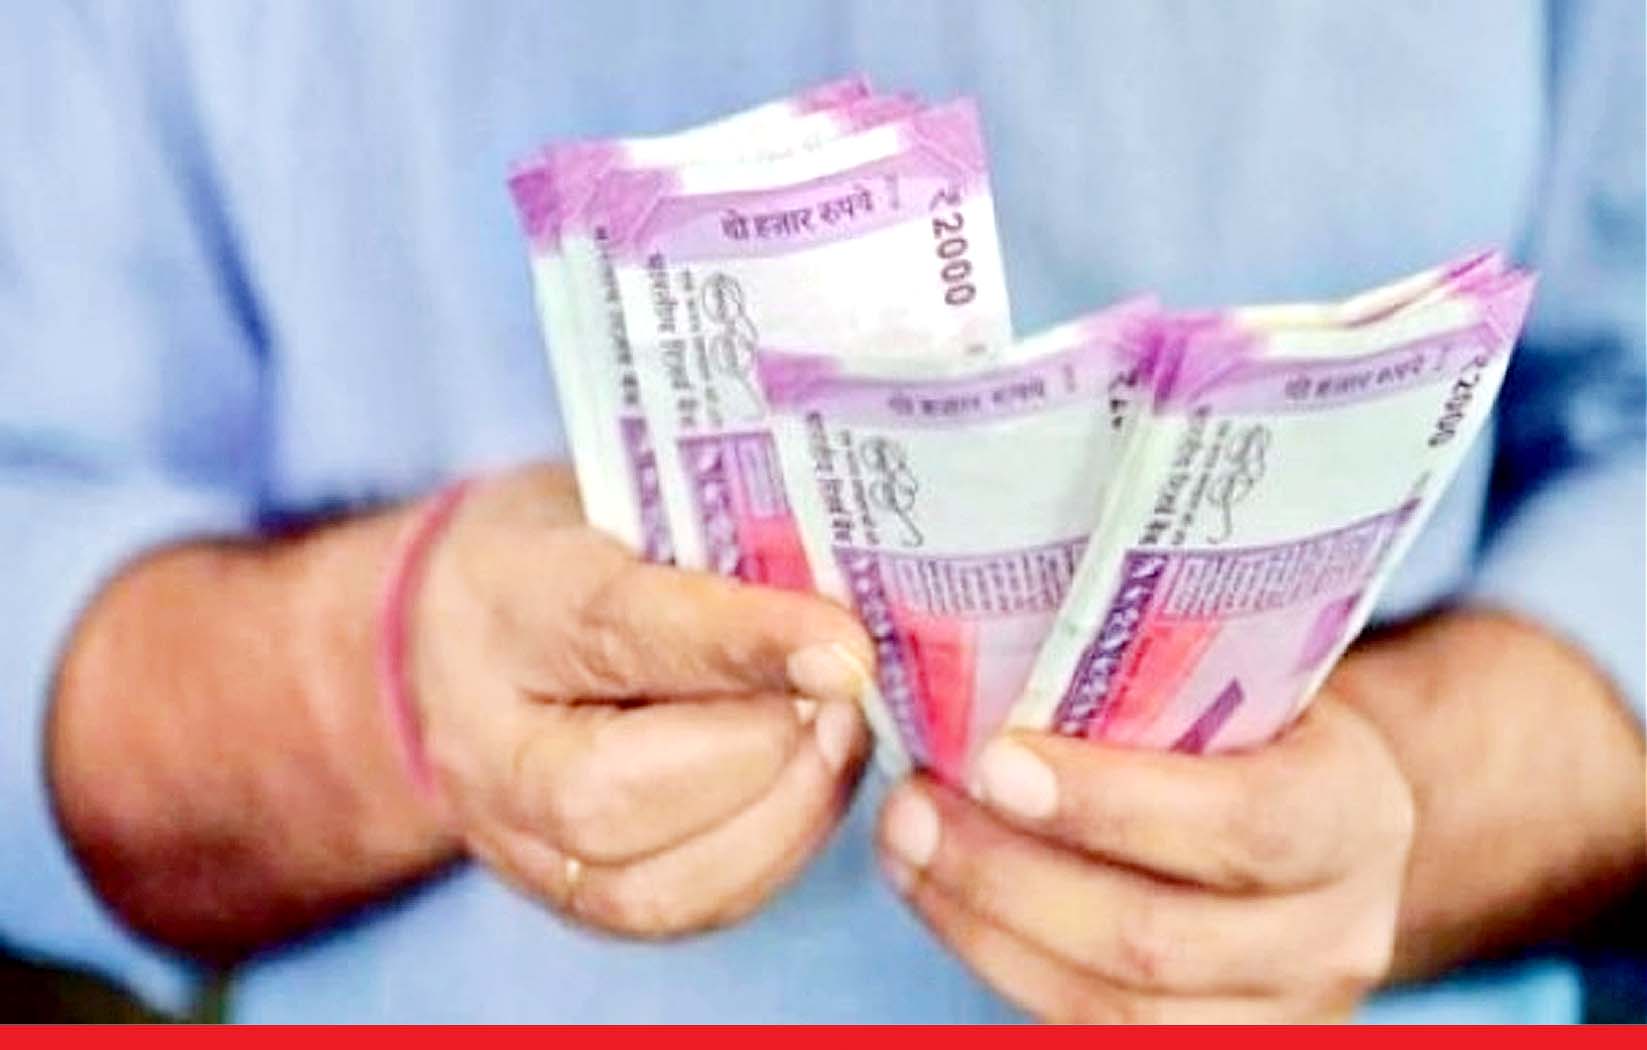 अहमदाबाद में एक शख्स अचानक बना करोड़पति पर कुछ घंटे में बैंक ने सभी पैसे वापस ले लिए